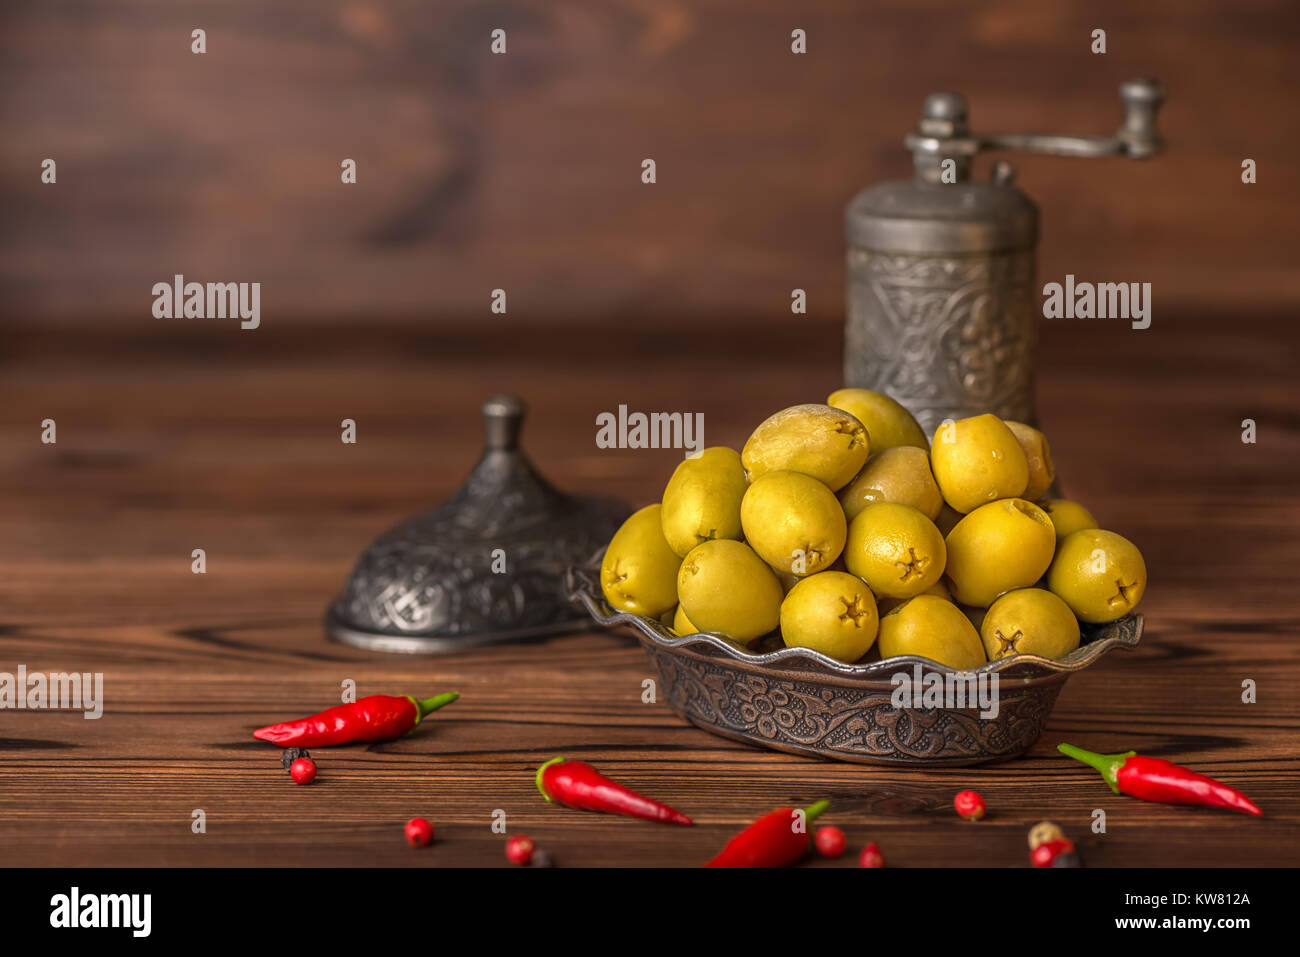 Decapare le olive verdi nella piastra giacciono sullo sfondo di legno decorate il peperoncino e la mola, in stile arabo Foto Stock